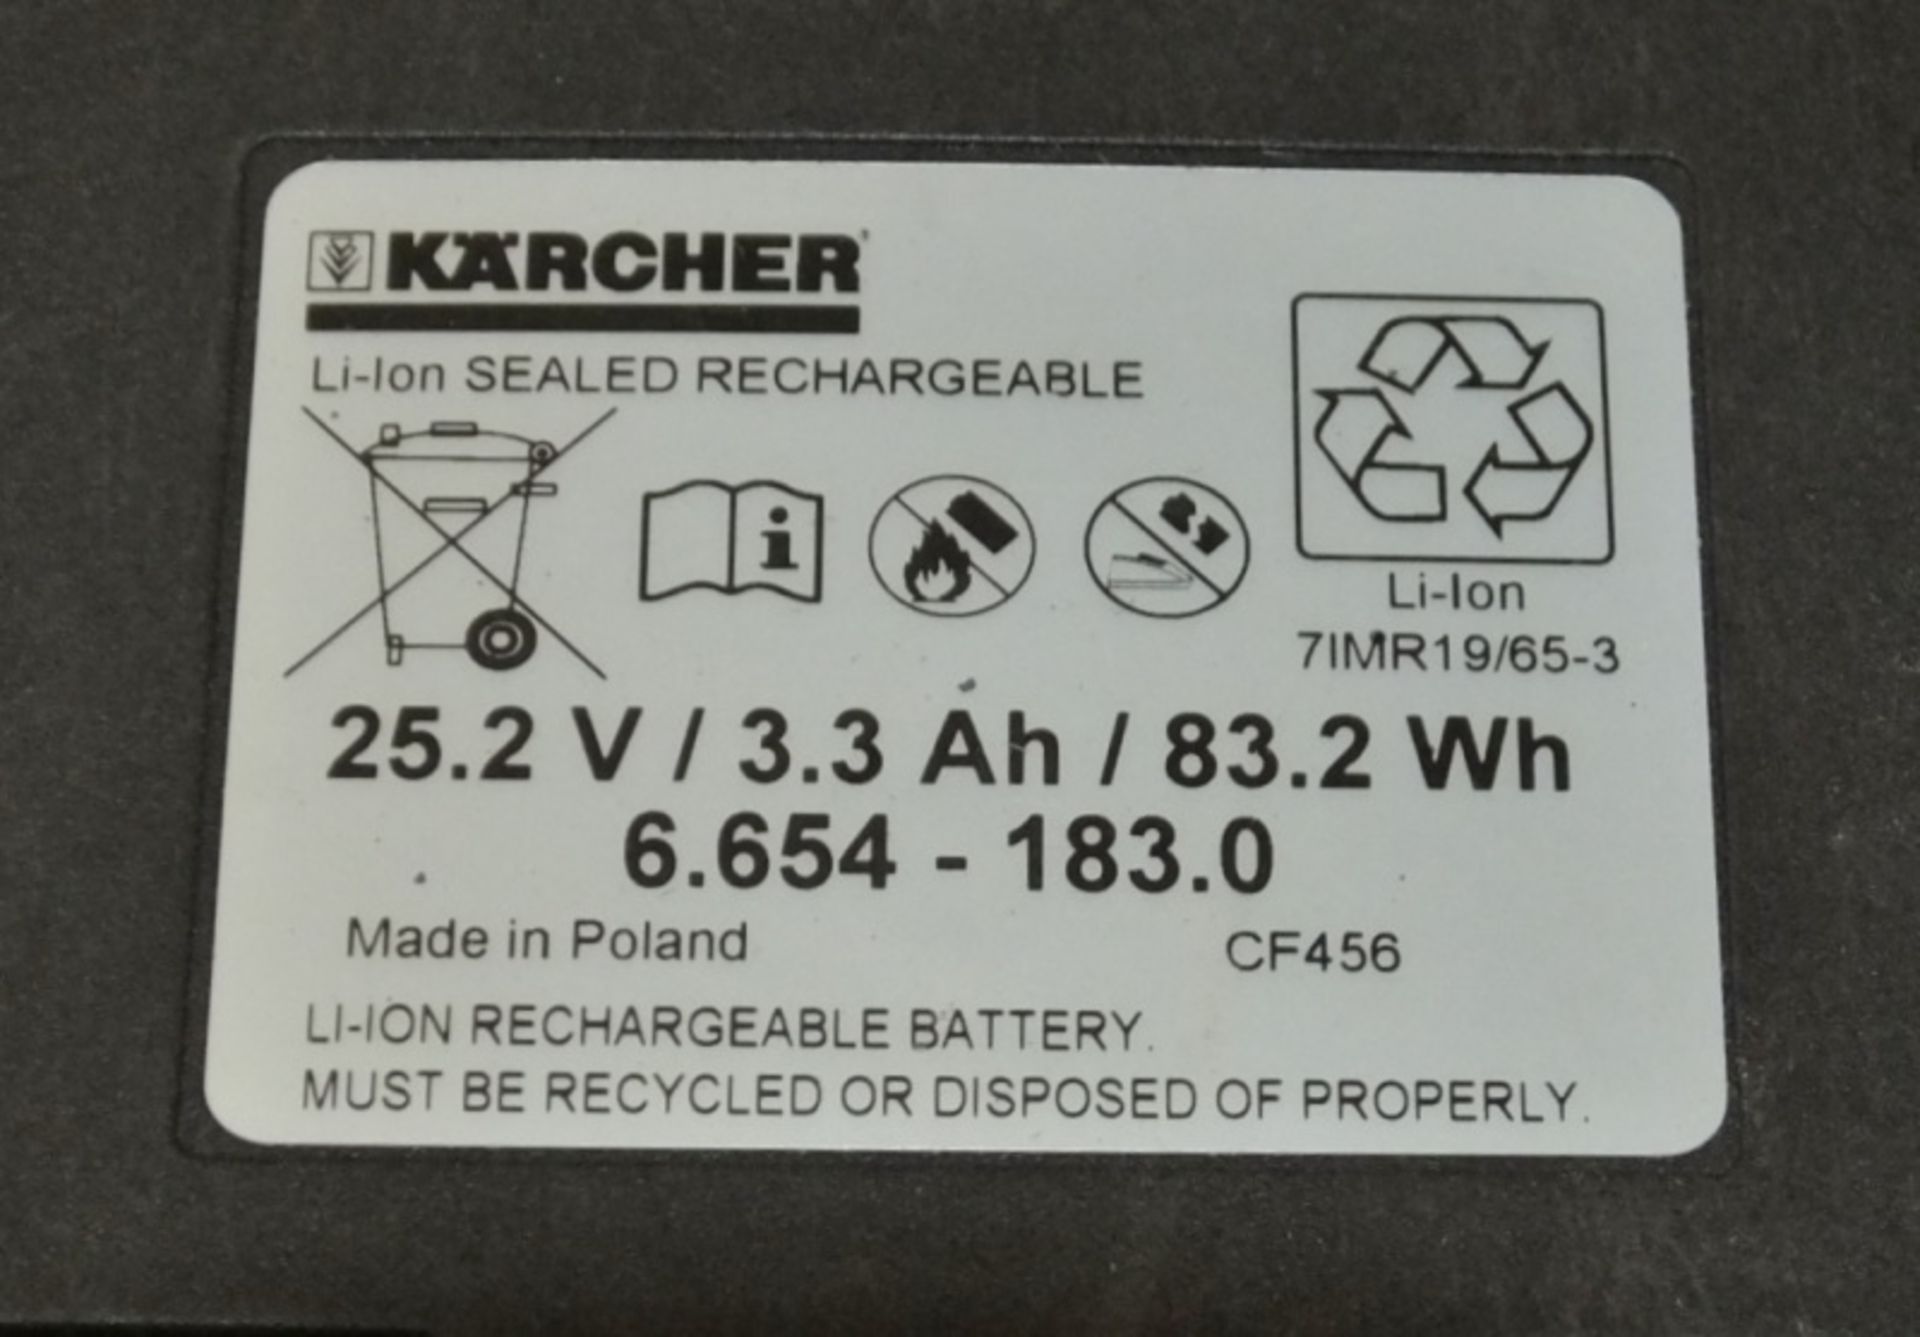 51 x Karcher Li ion 25.2V Batteries - Image 4 of 4